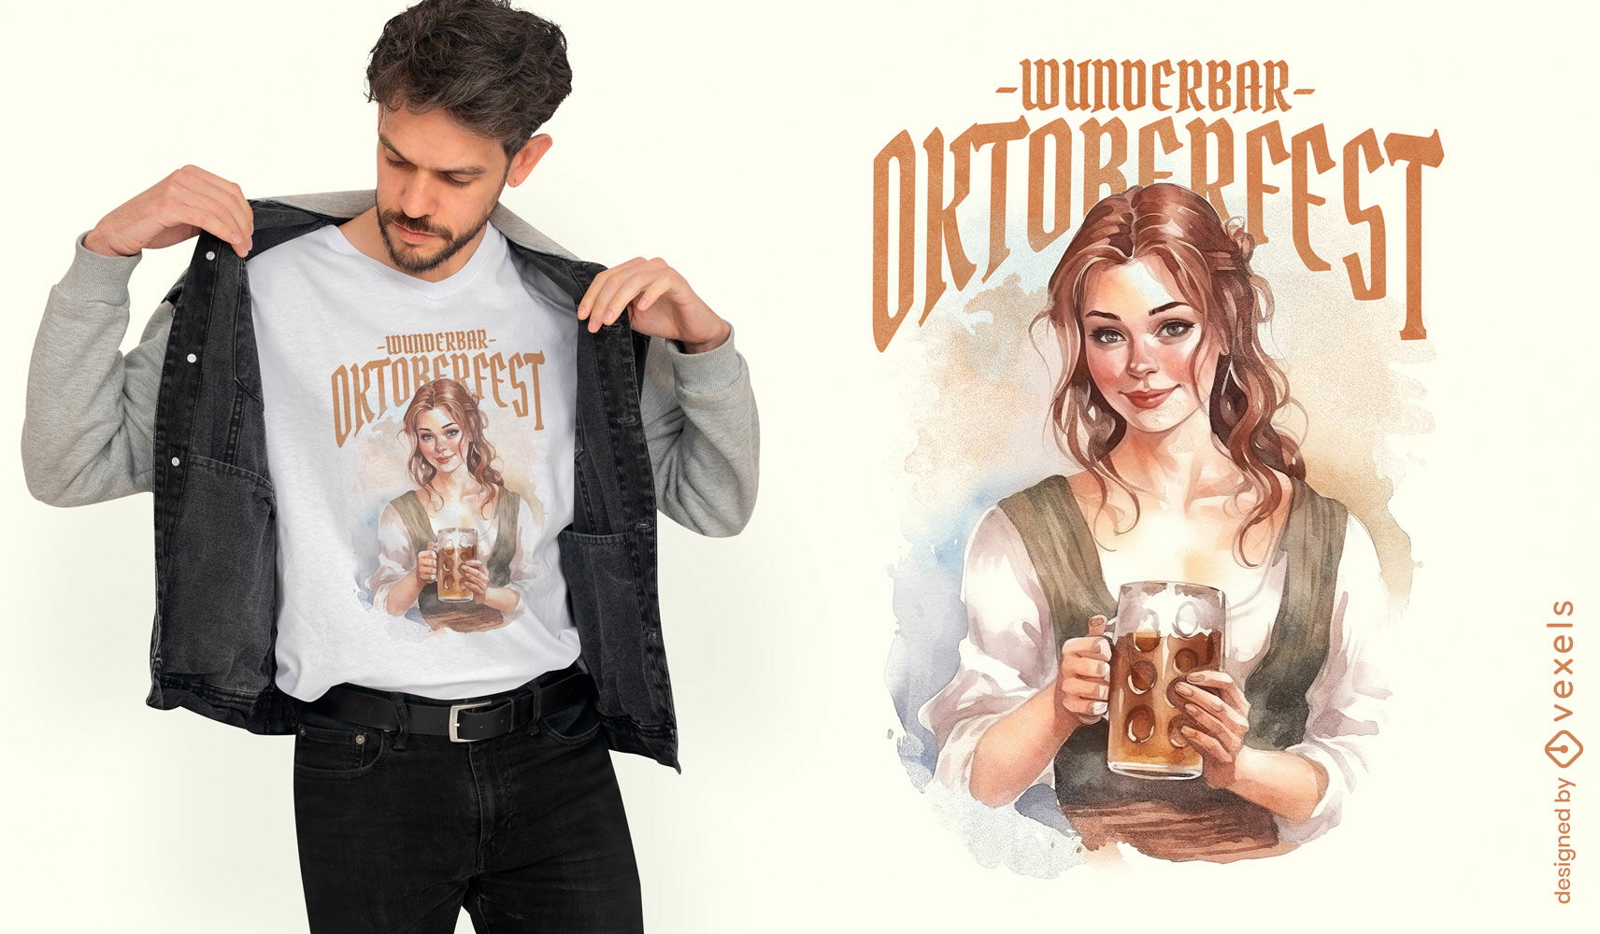 Oktoberfest german girl t-shirt psd